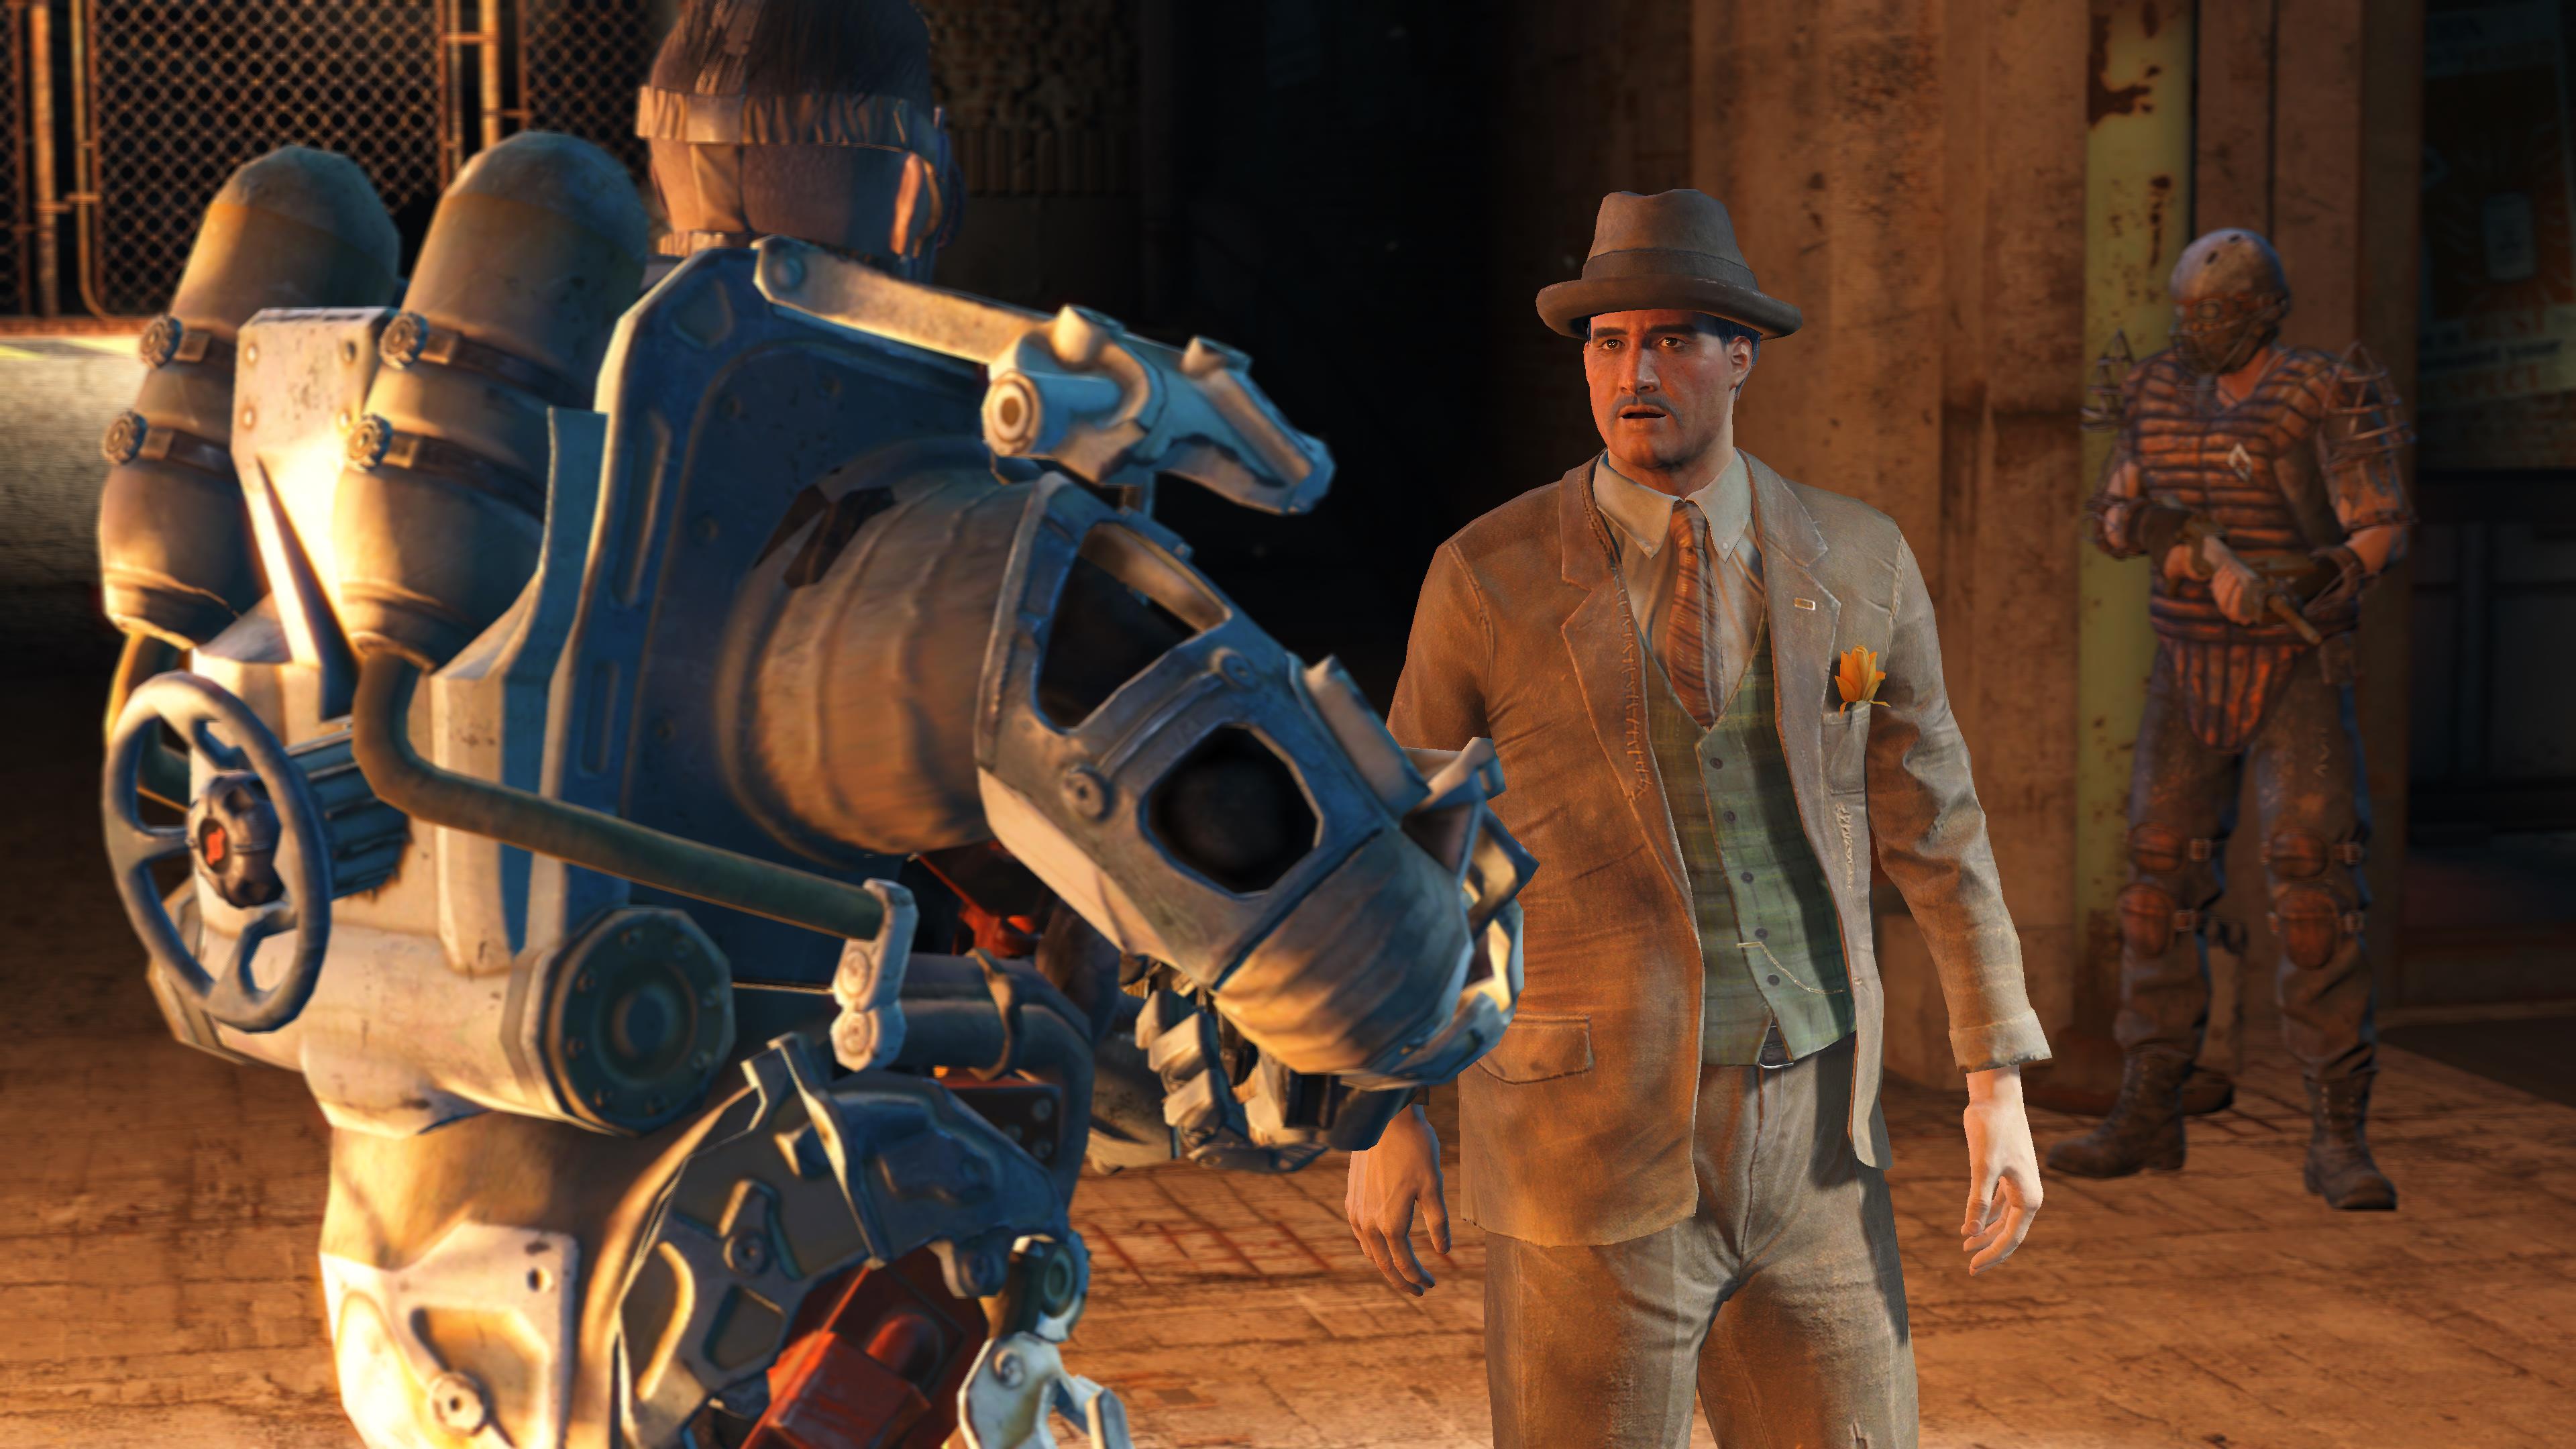 Next-gen update Falloutu 4 nabírá zpoždění